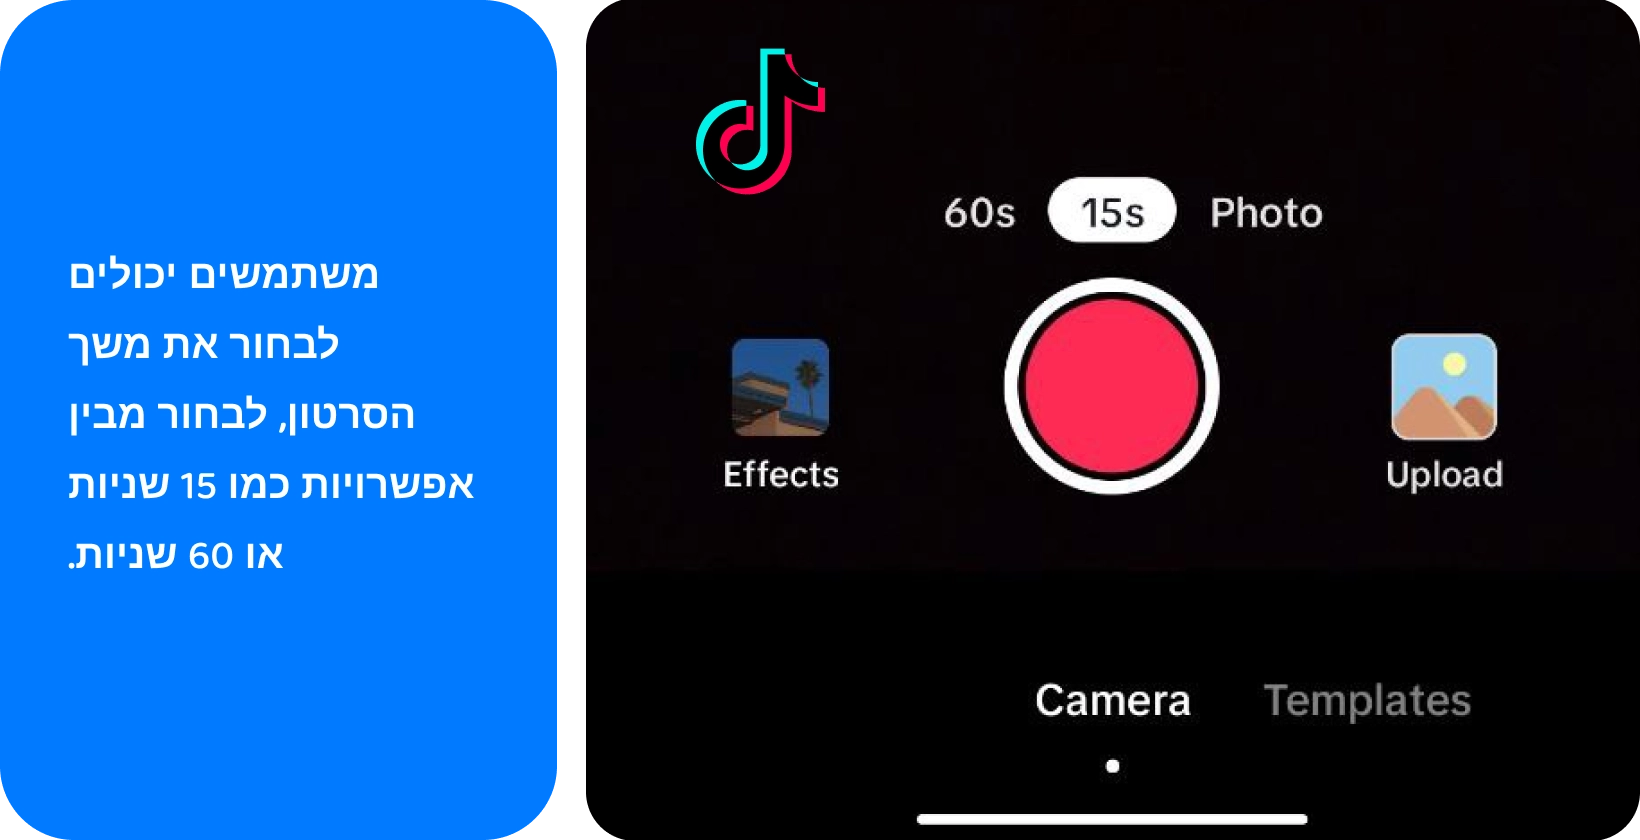 ממשק ההקלטה של TikTok עם אפשרויות להוספת סאונד, הפיכת מצלמה, החלת פילטרים, שימוש בטיימר ועוד ליצירת וידאו יצירתי.
